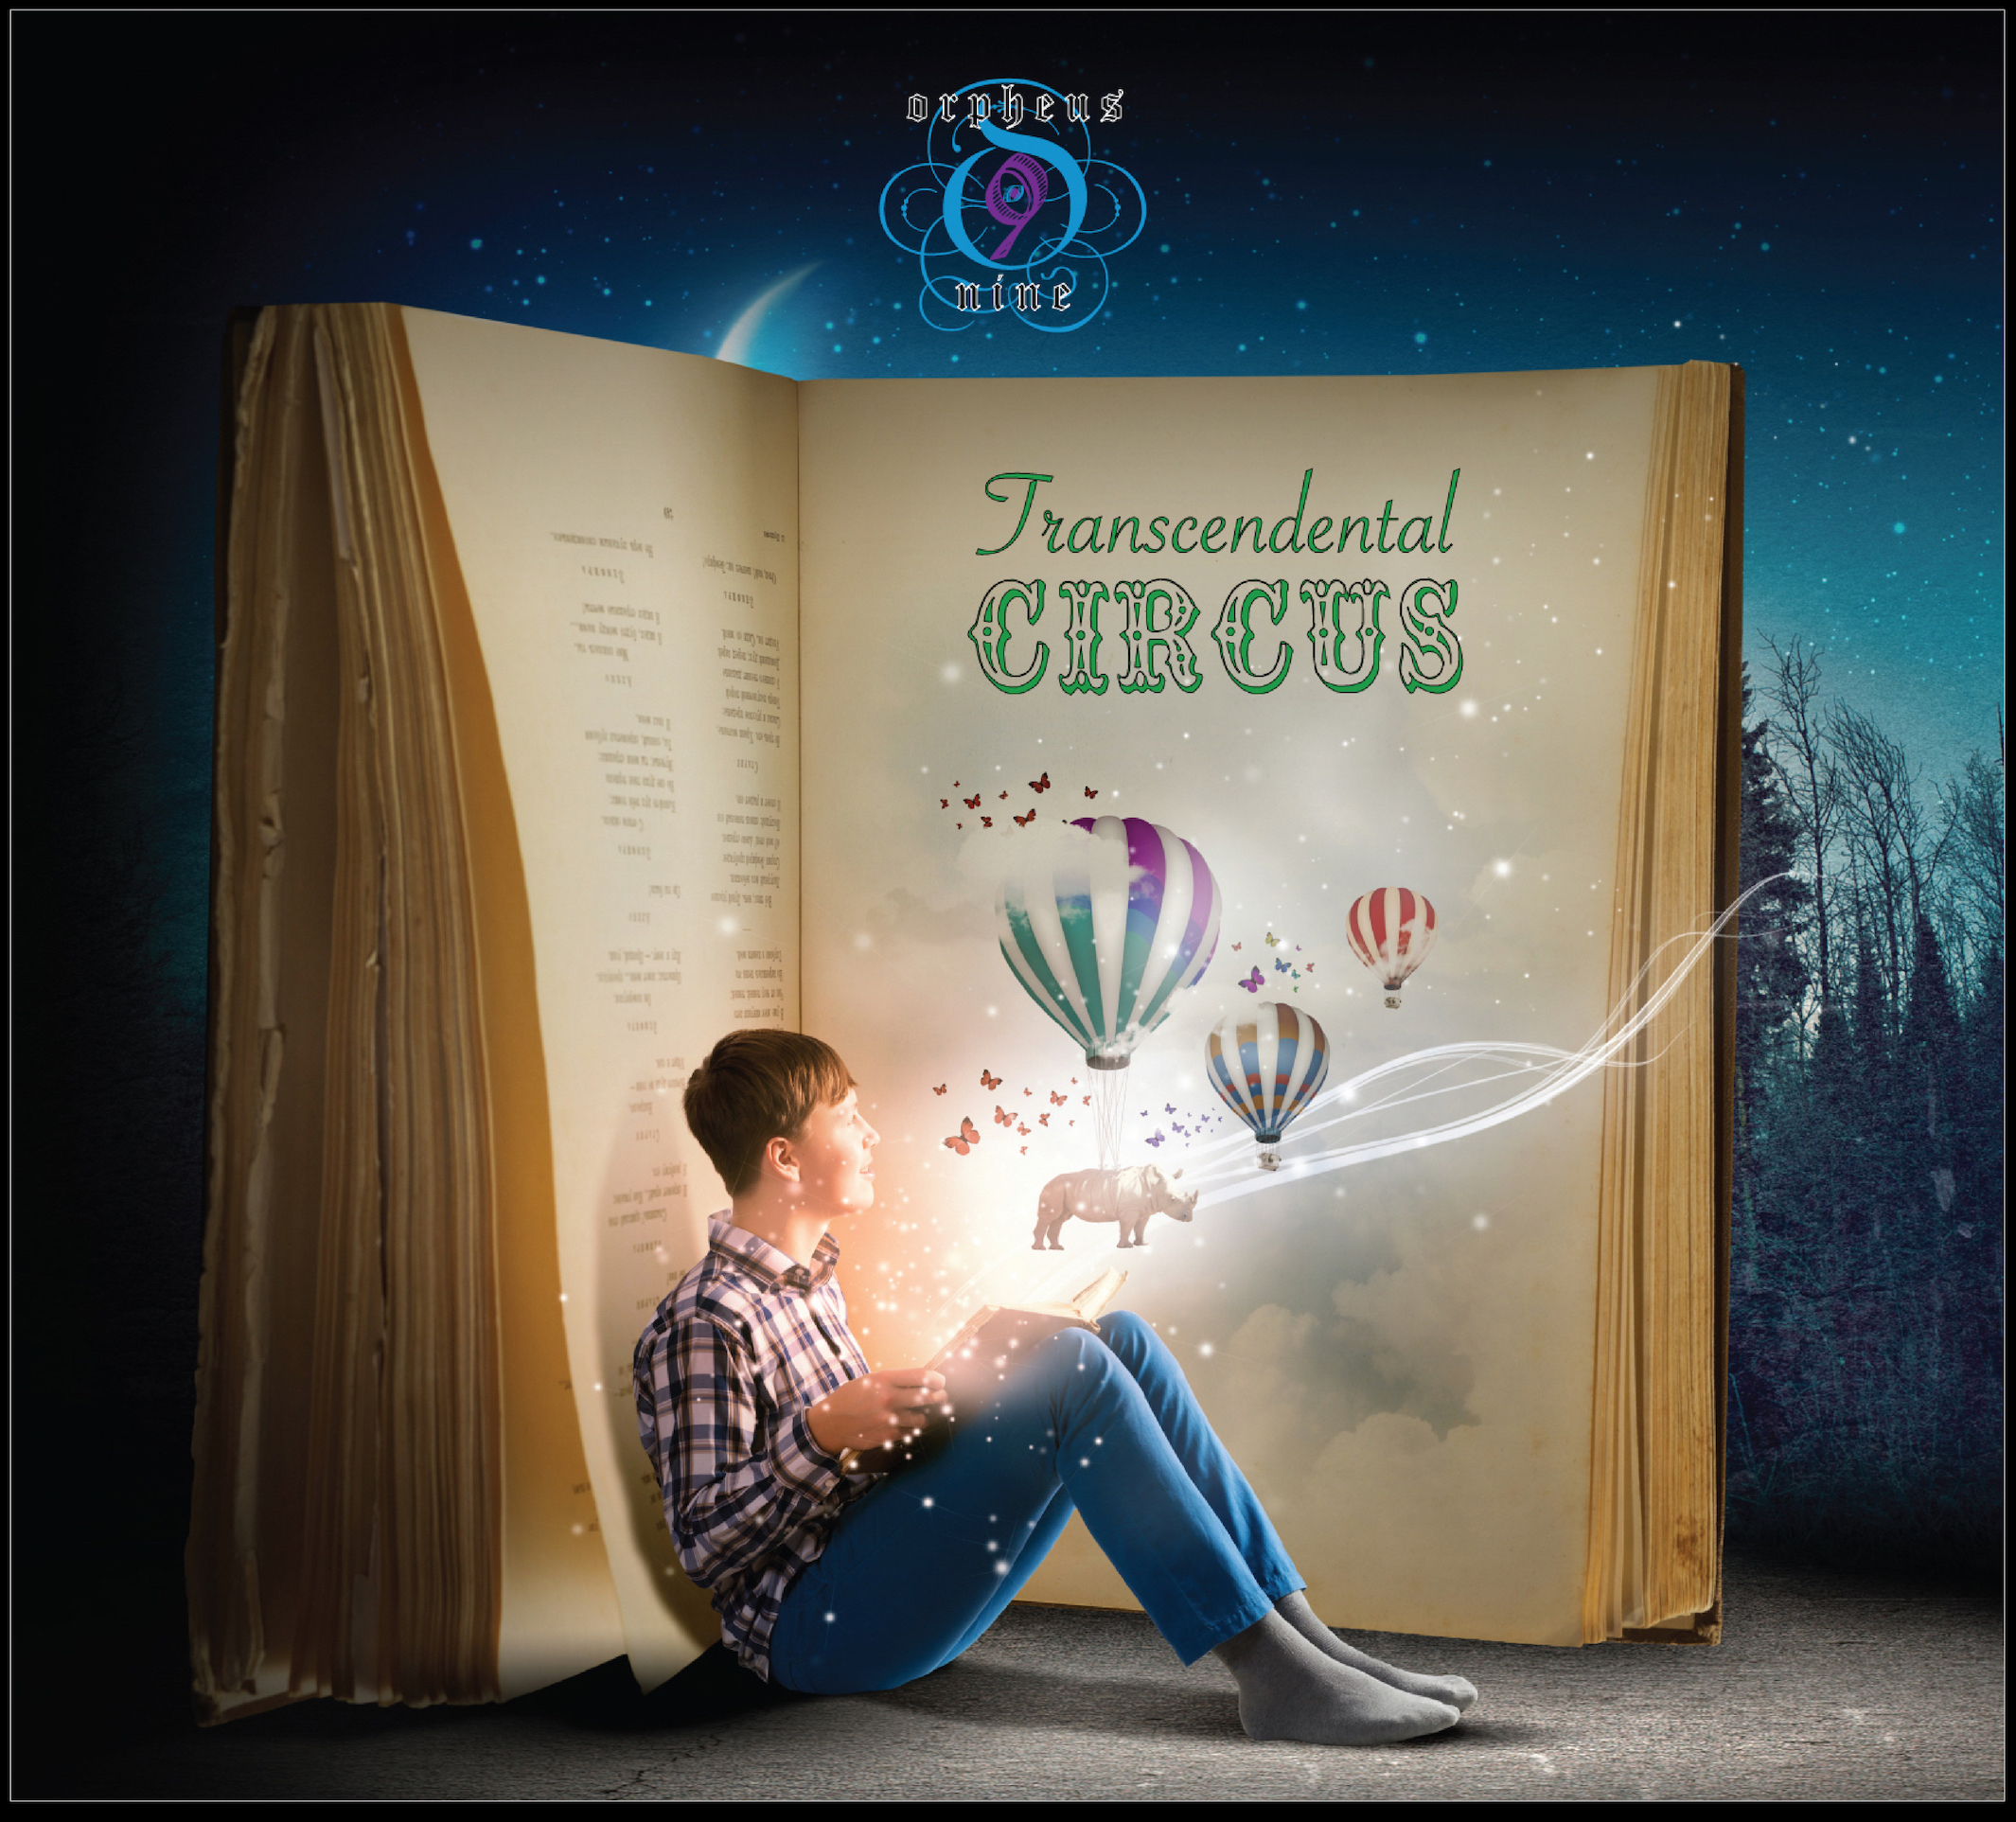 Transcendental Circus album cover & press